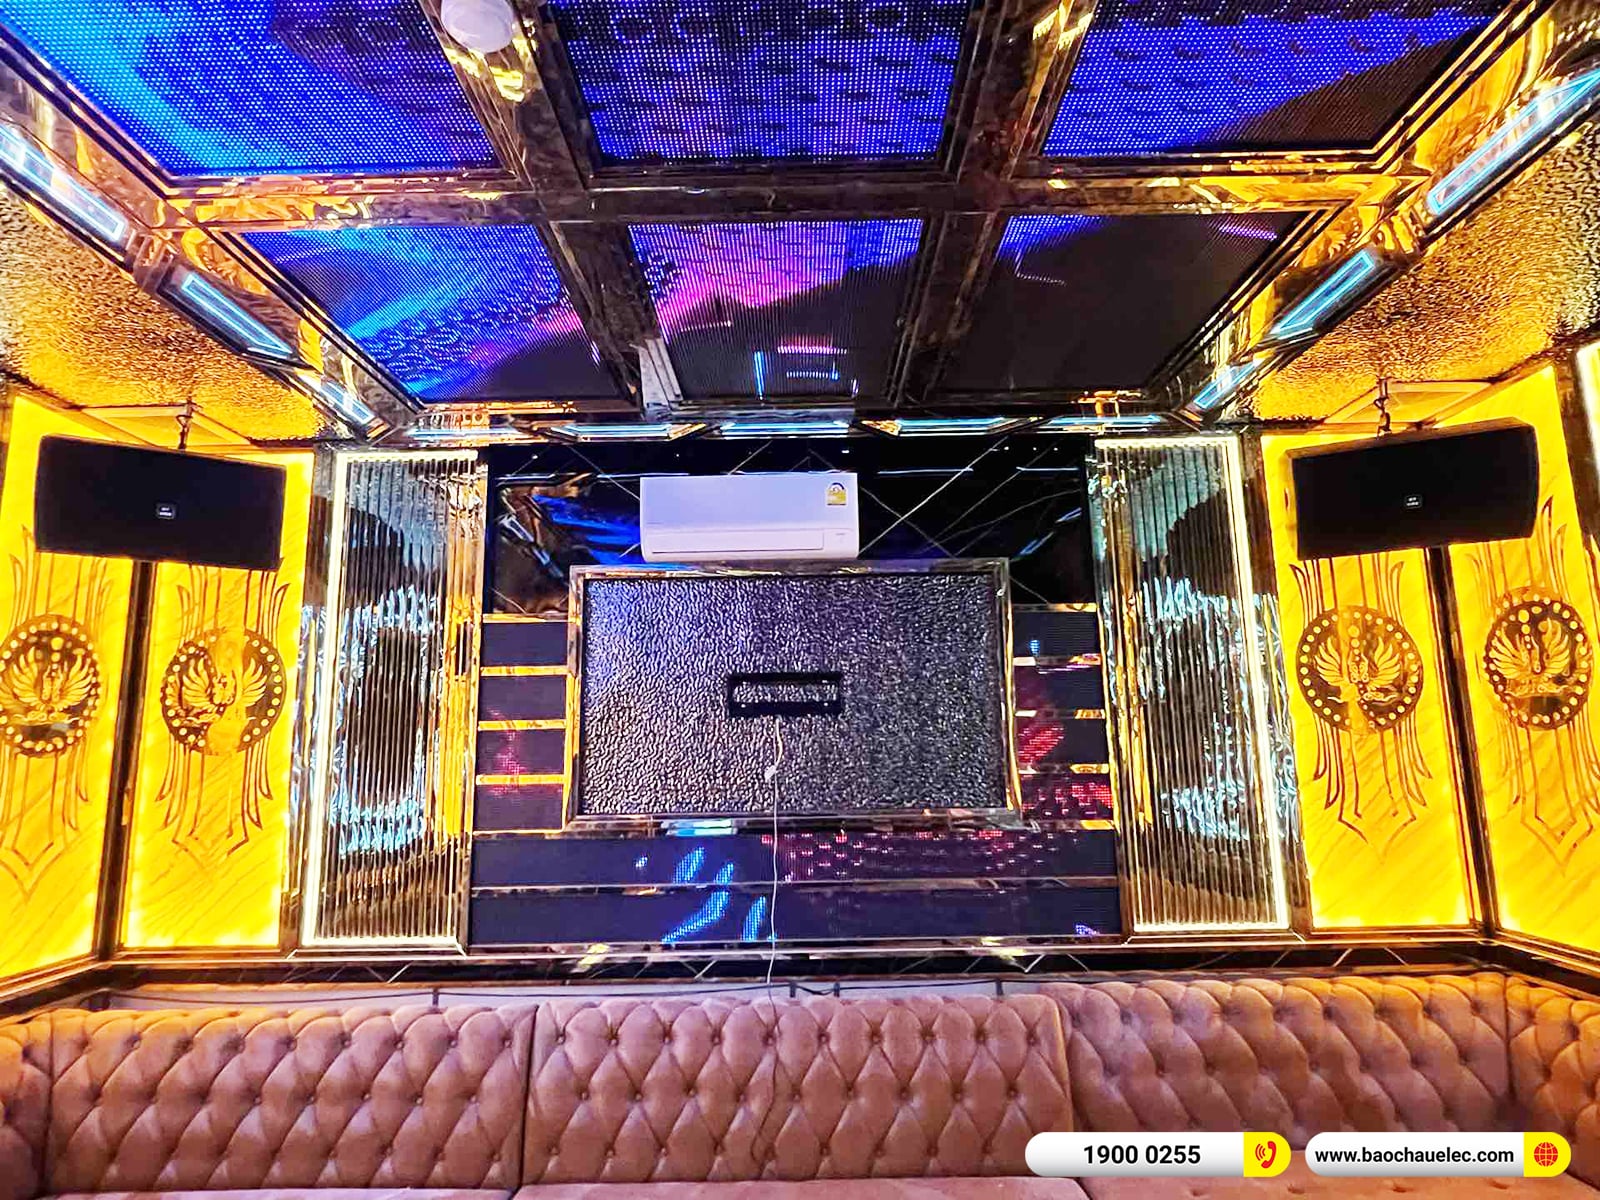 Lắp đặt thêm 3 phòng hát kinh doanh BMB hơn 400tr cho quán karaoke Dấu Ấn 2 tại Quảng Bình (BMB 1212SE, JBL KP4012 G2, KX180A,…)